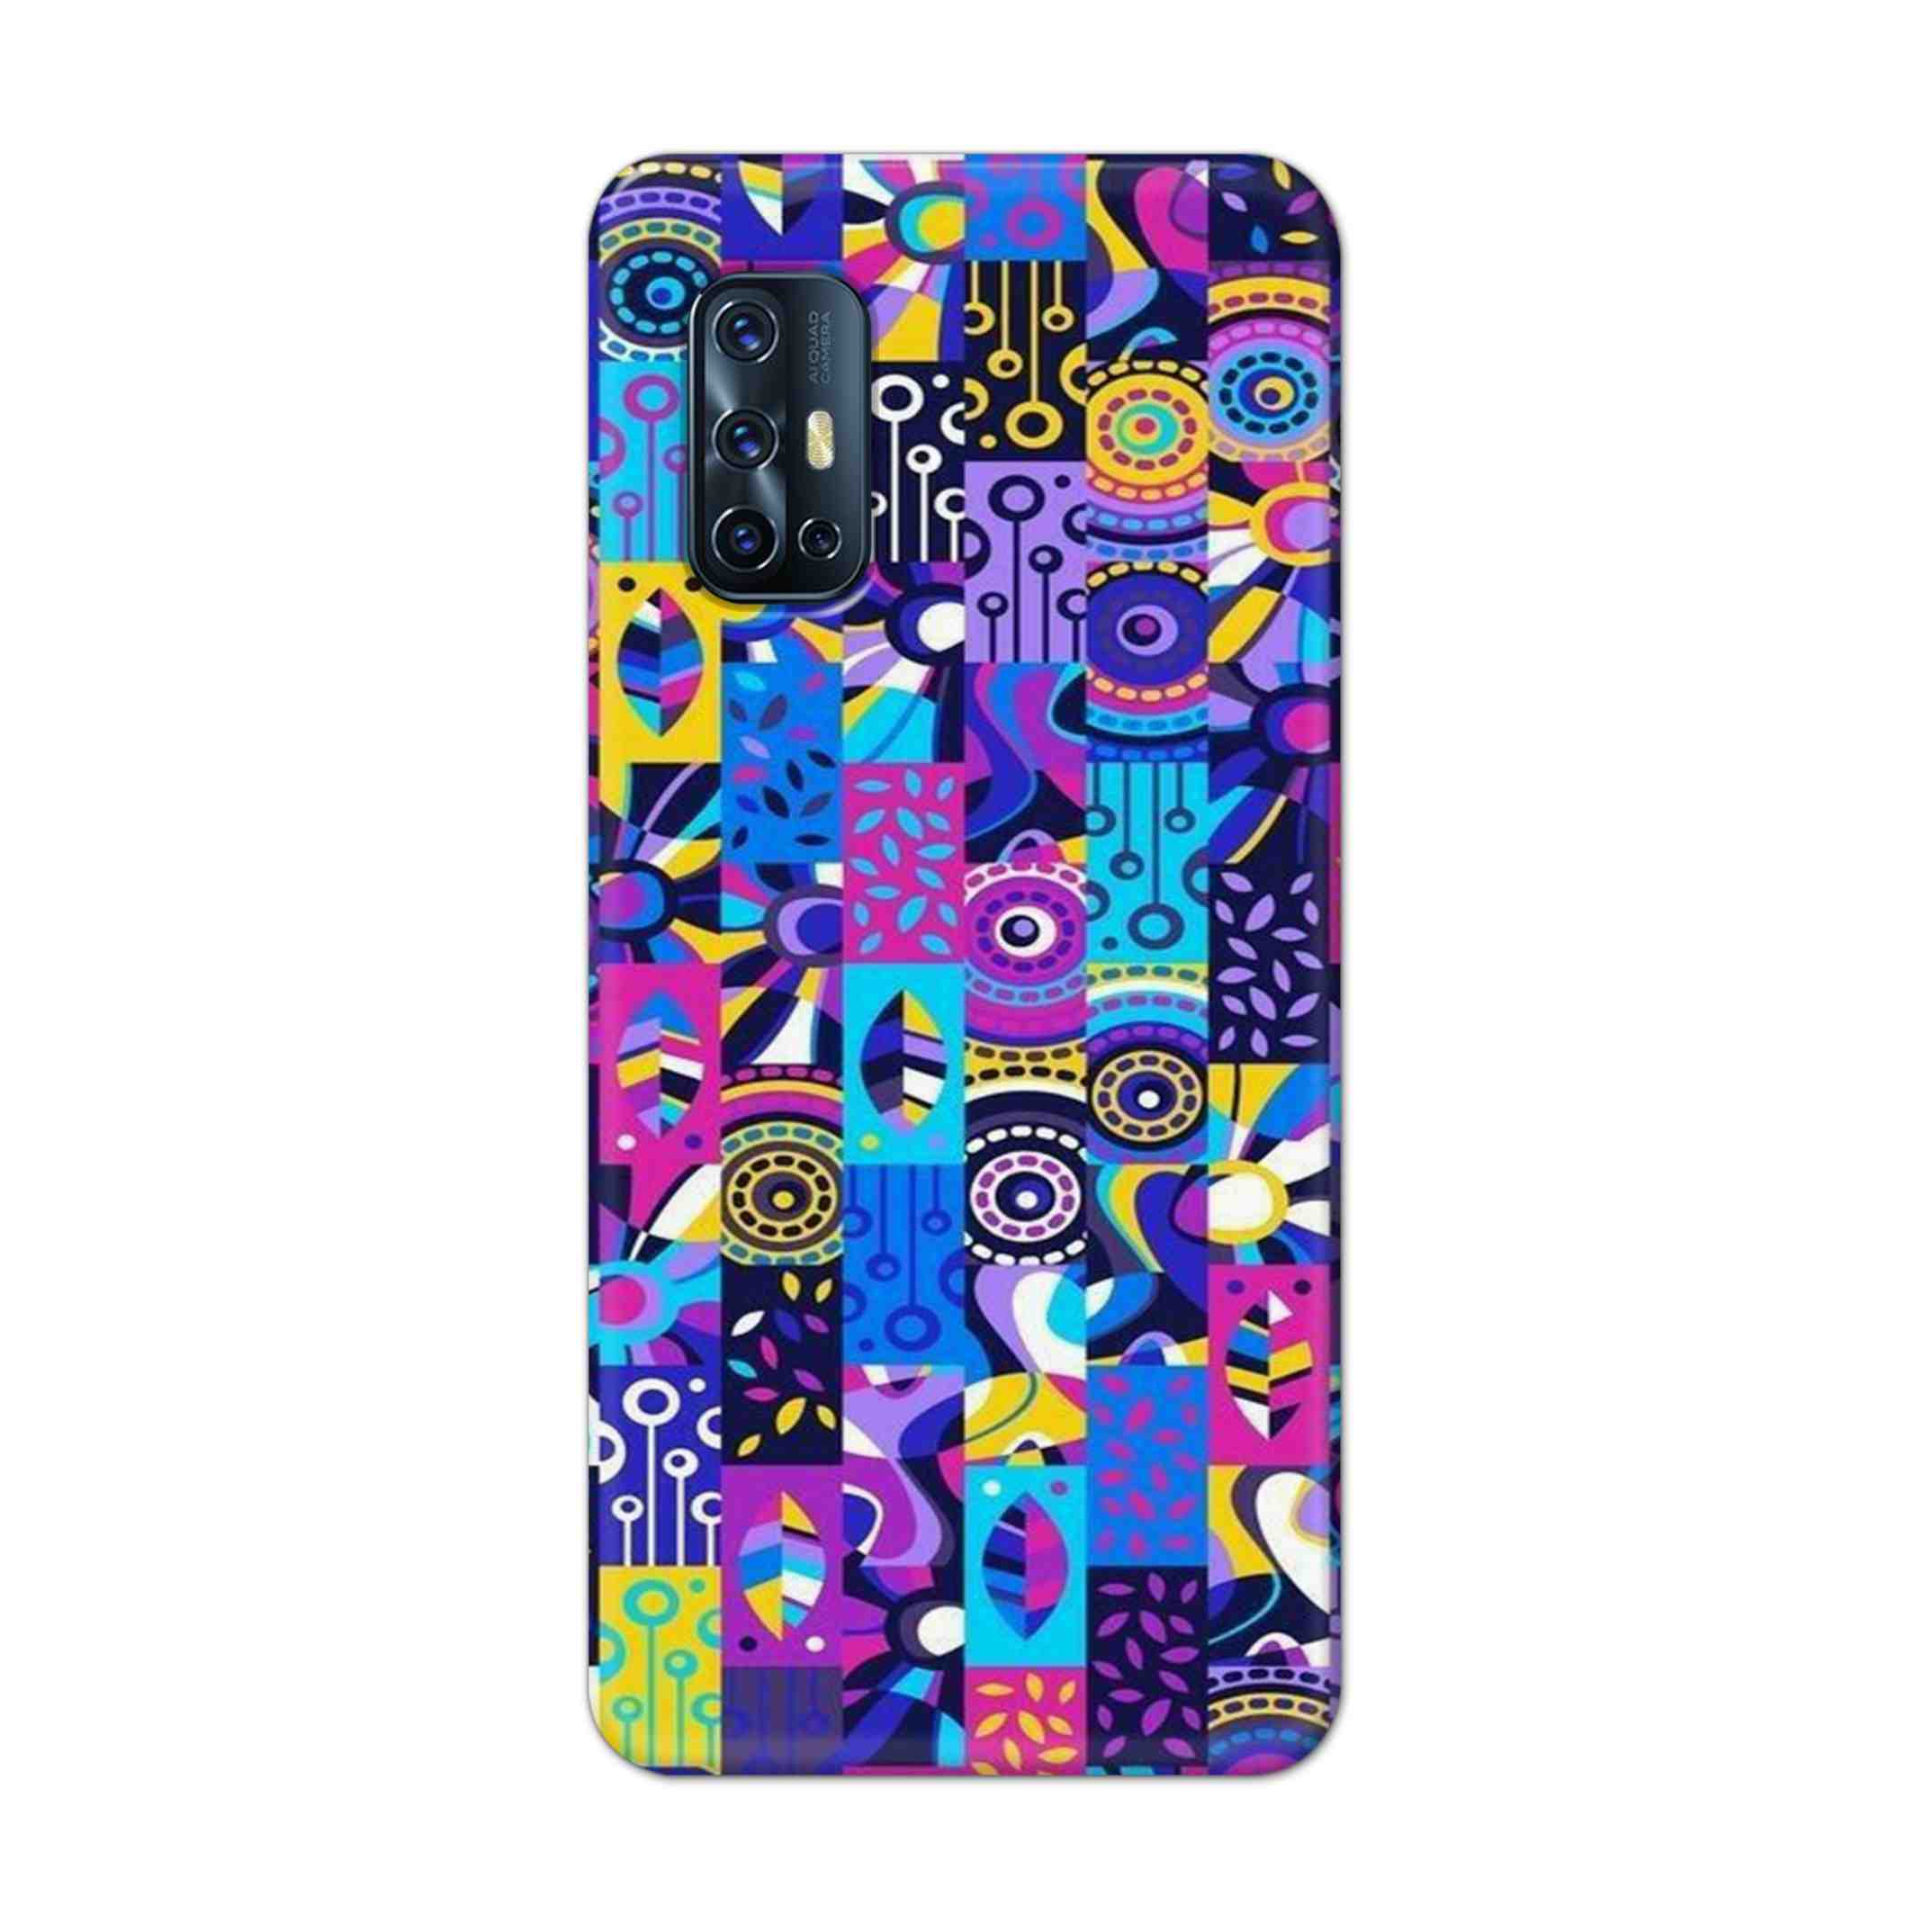 Buy Rainbow Art Hard Back Mobile Phone Case Cover For Vivo V17 Online